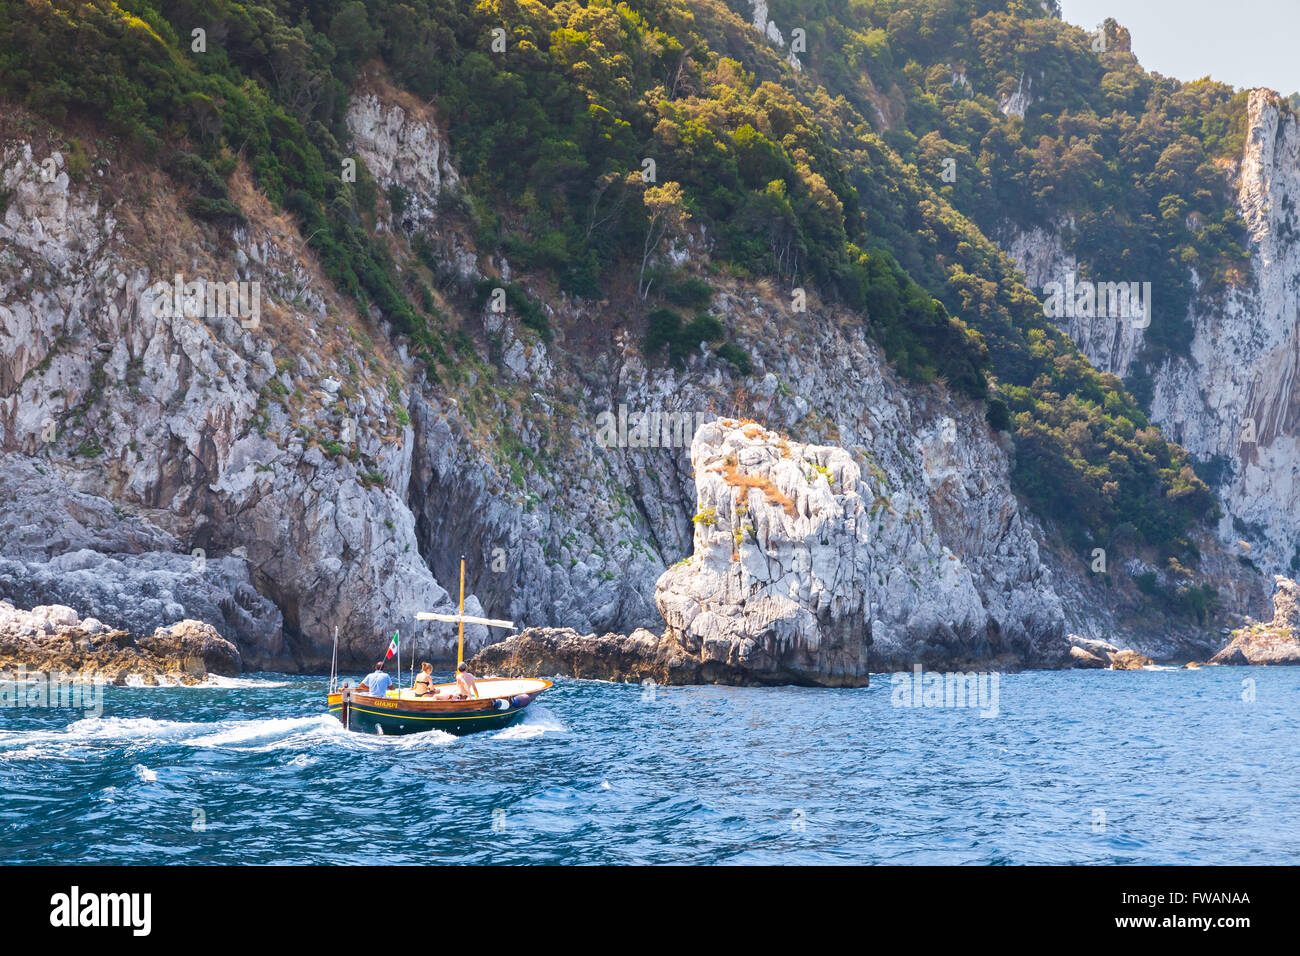 Capri, Italia - 14 agosto 2015: piccolo piacere motoscafo con i normali turisti andare vicino a rocce costiere di isola di Capri, Italia Foto Stock